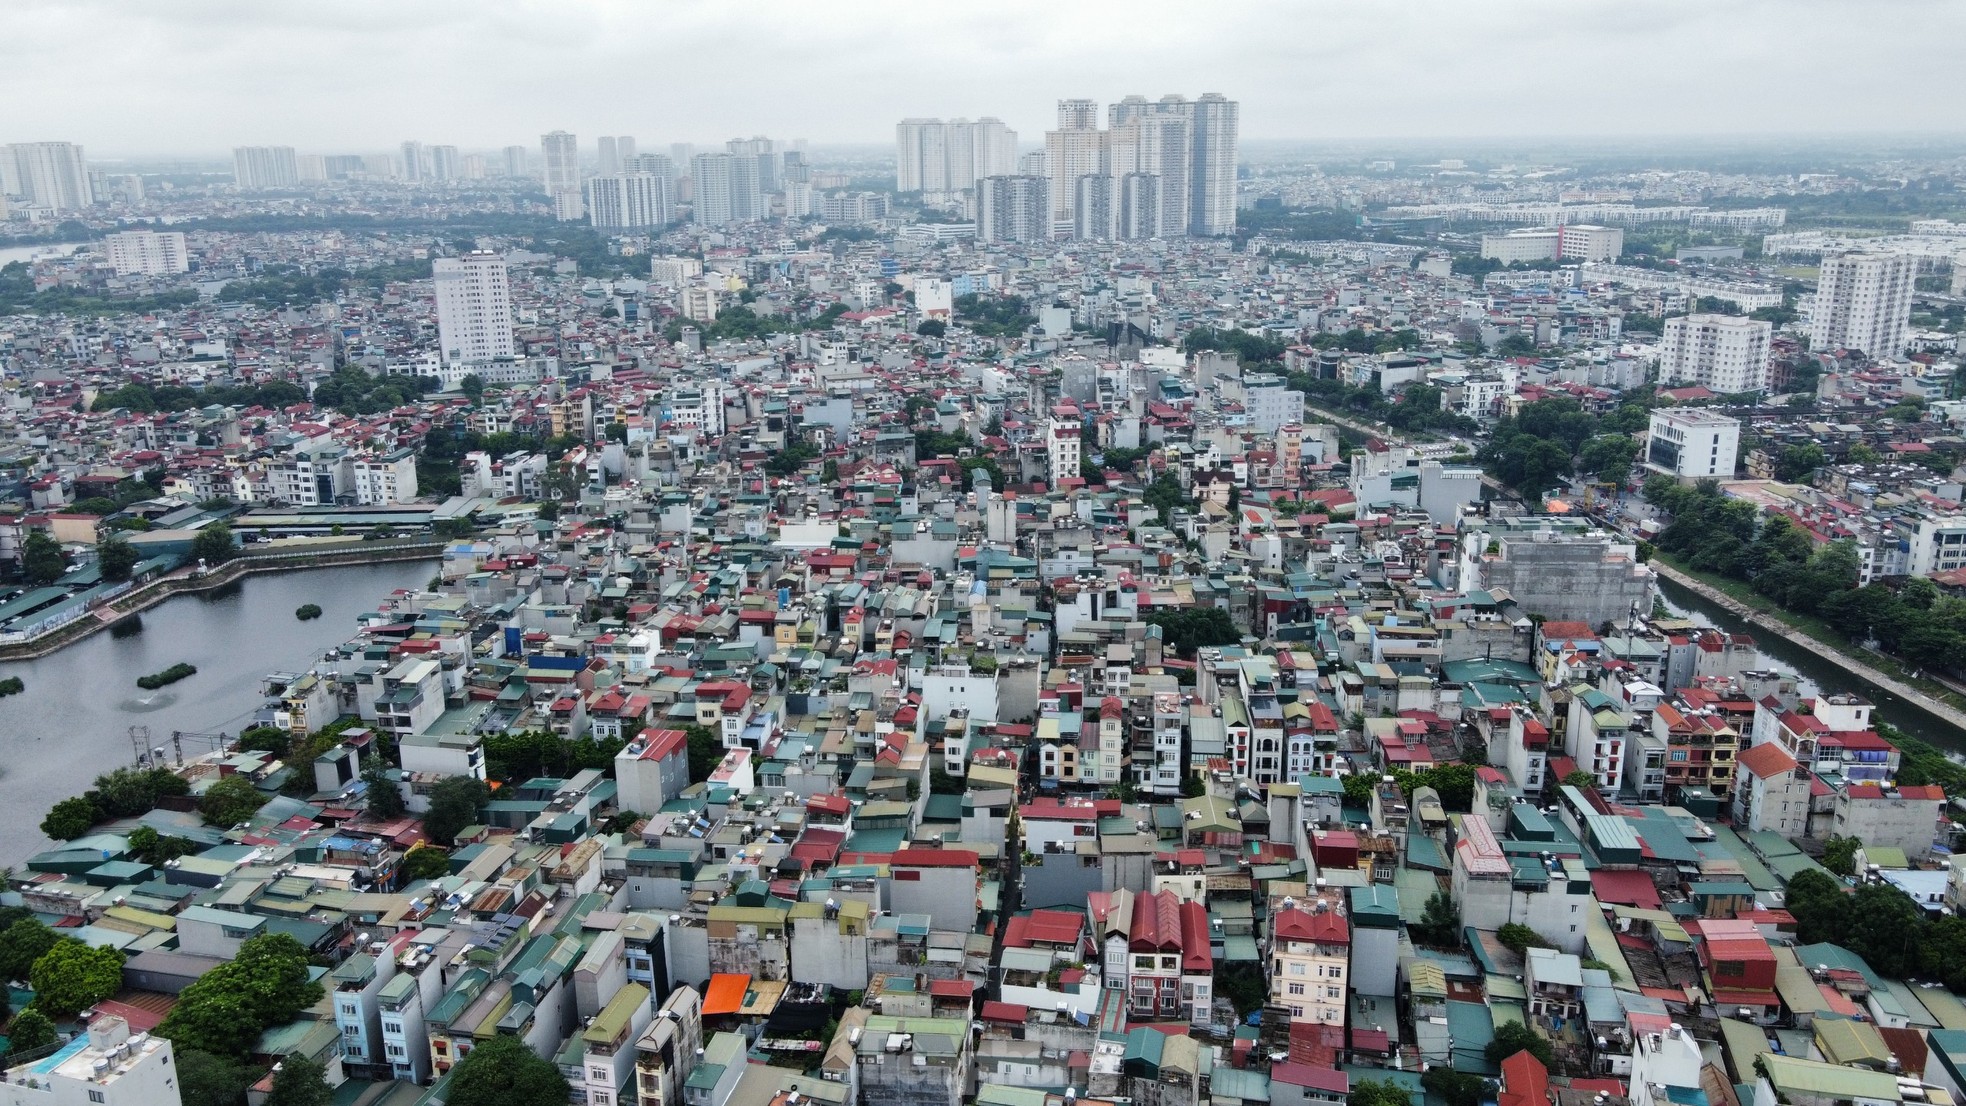 'Thủ phủ' chung cư mini gần nơi xảy ra vụ cháy kinh hoàng ở Hà Nội ảnh 14